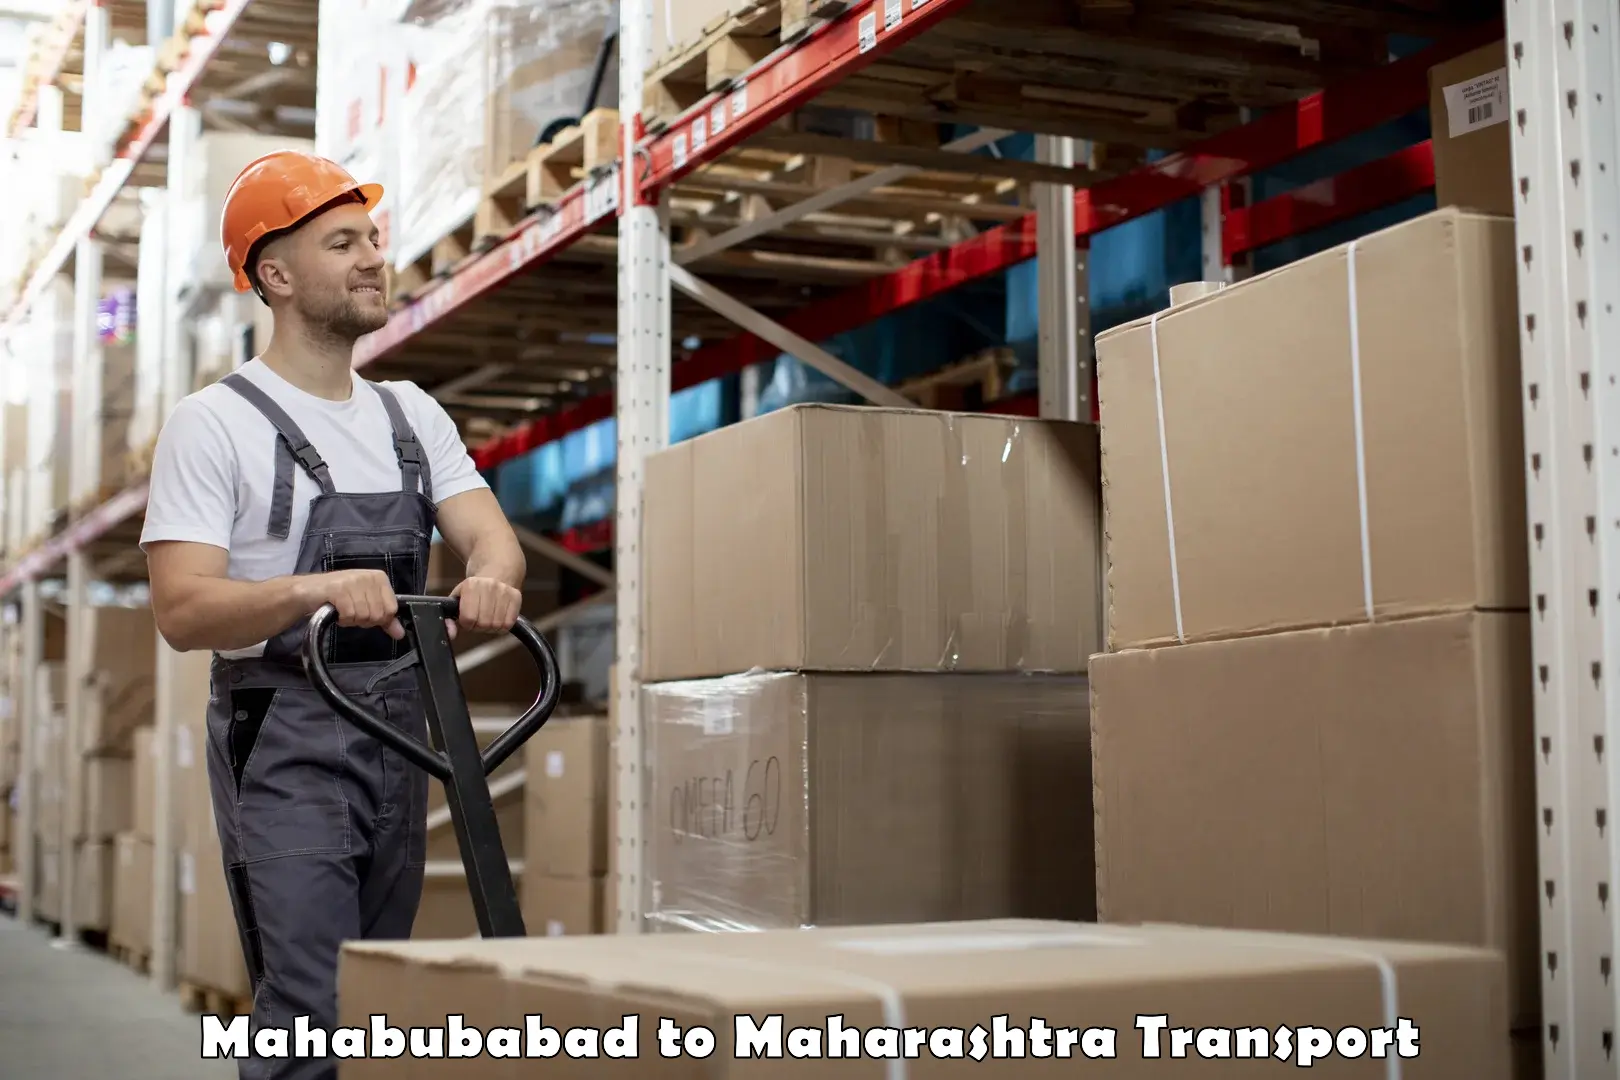 International cargo transportation services Mahabubabad to Ahmednagar